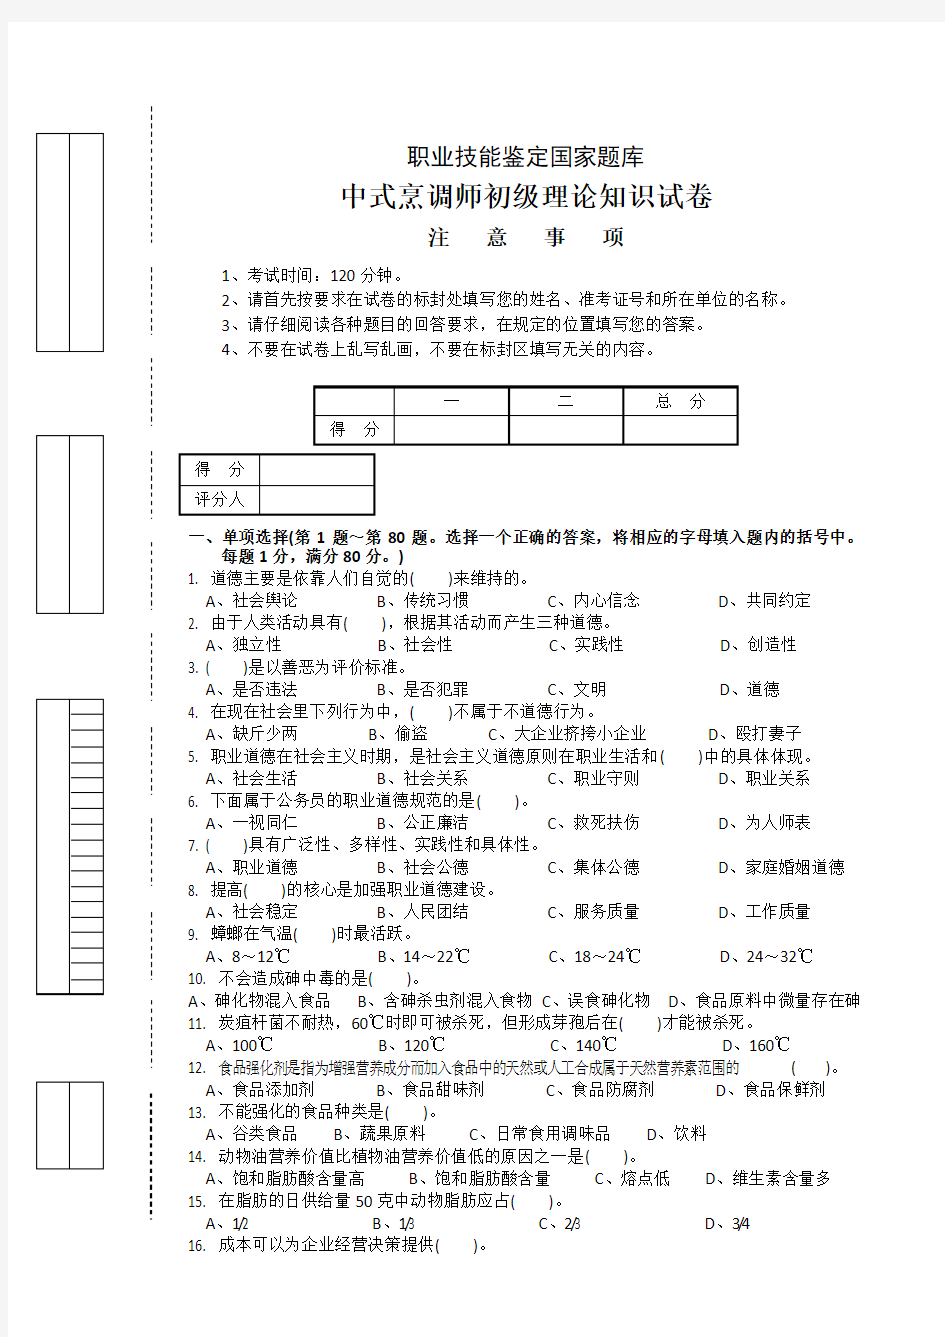 中式烹调师初级理论试卷正文5